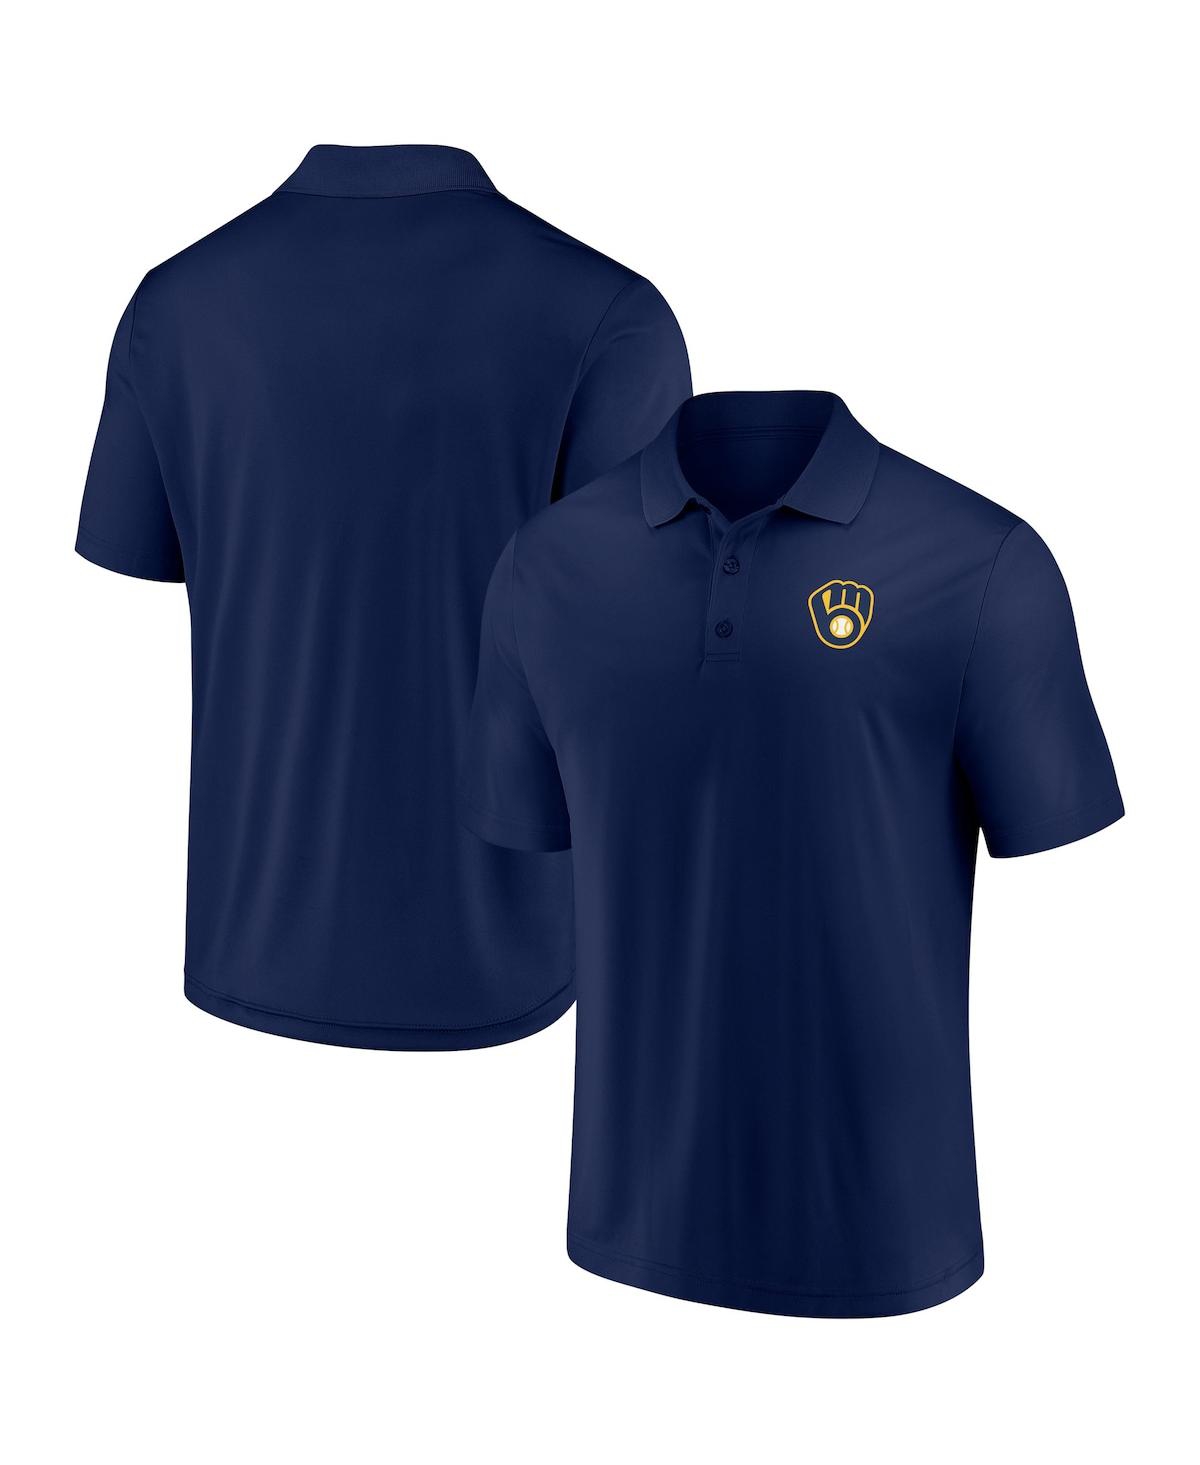 Shop Fanatics Men's  Navy Milwaukee Brewers Winning Streak Polo Shirt